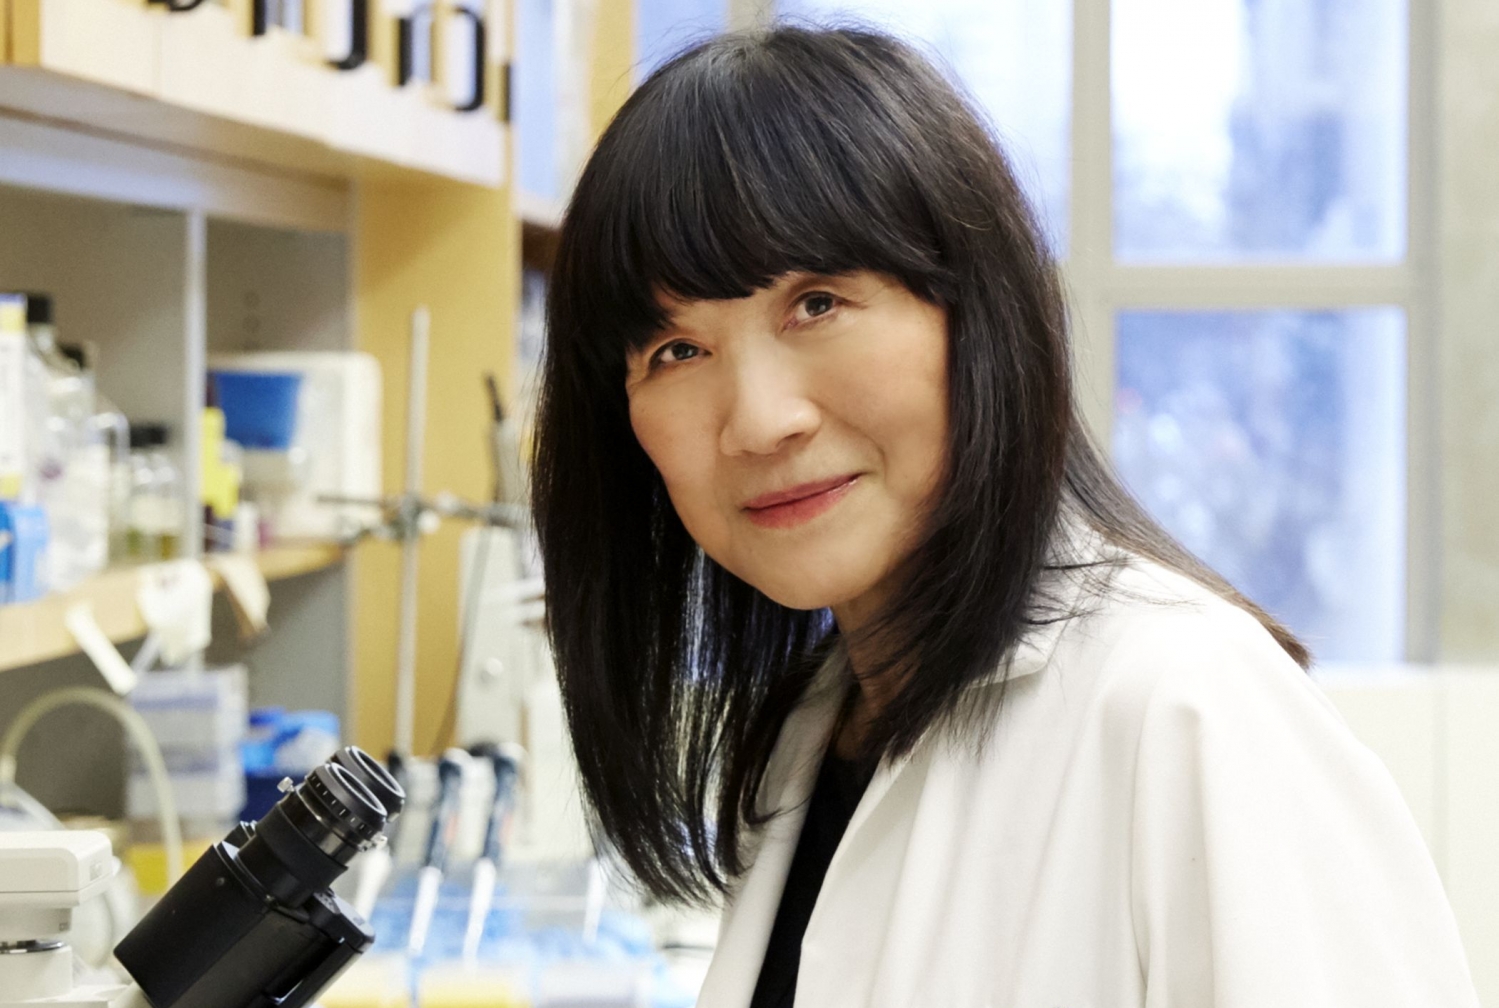 Dr. Selina Chen-Kiang